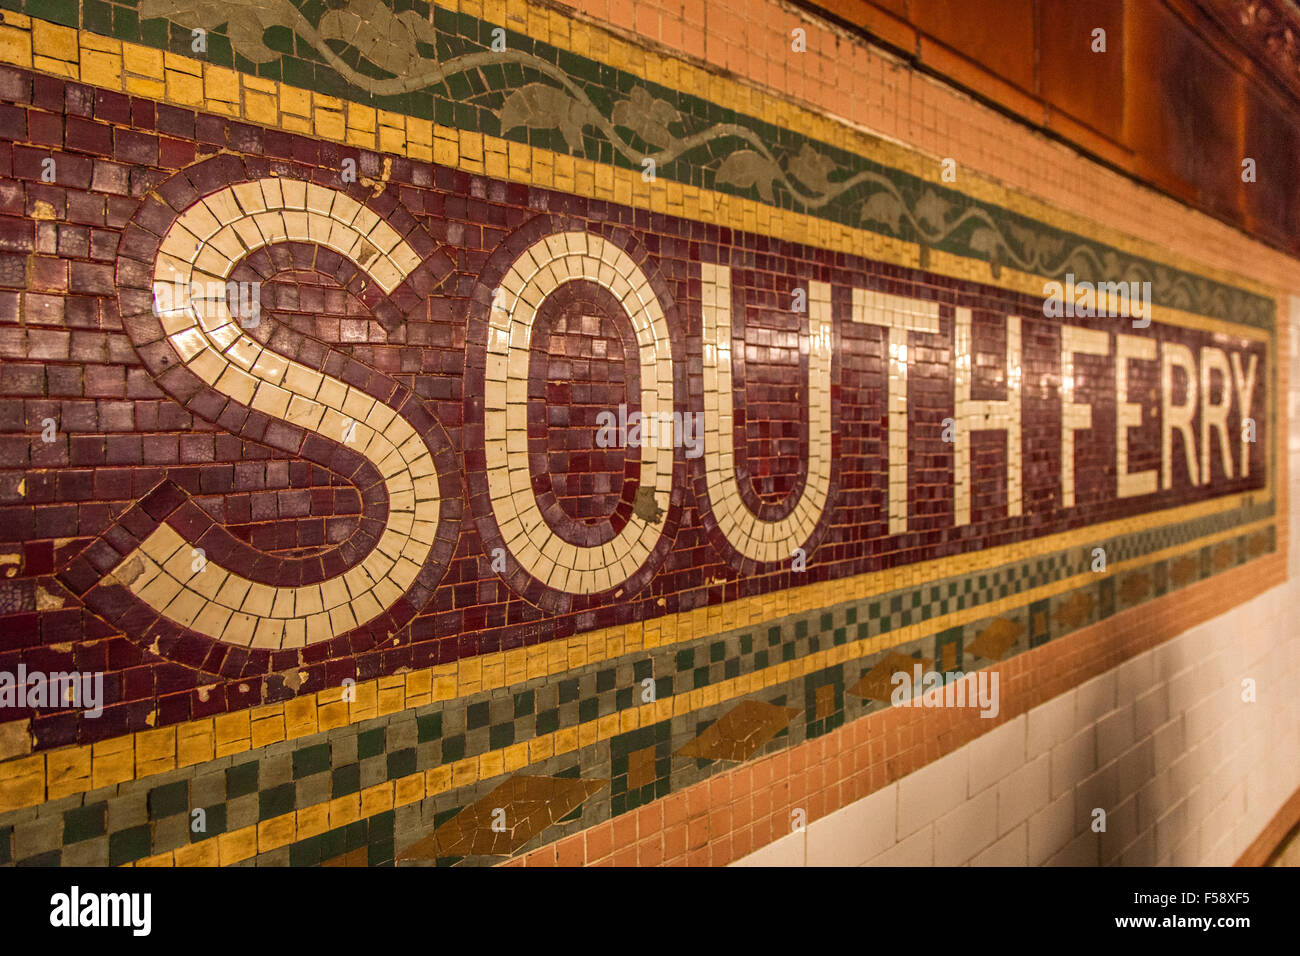 Mosaik-Zeichen, South Ferry U-Bahn Station, New York City, Amerika Stockfoto